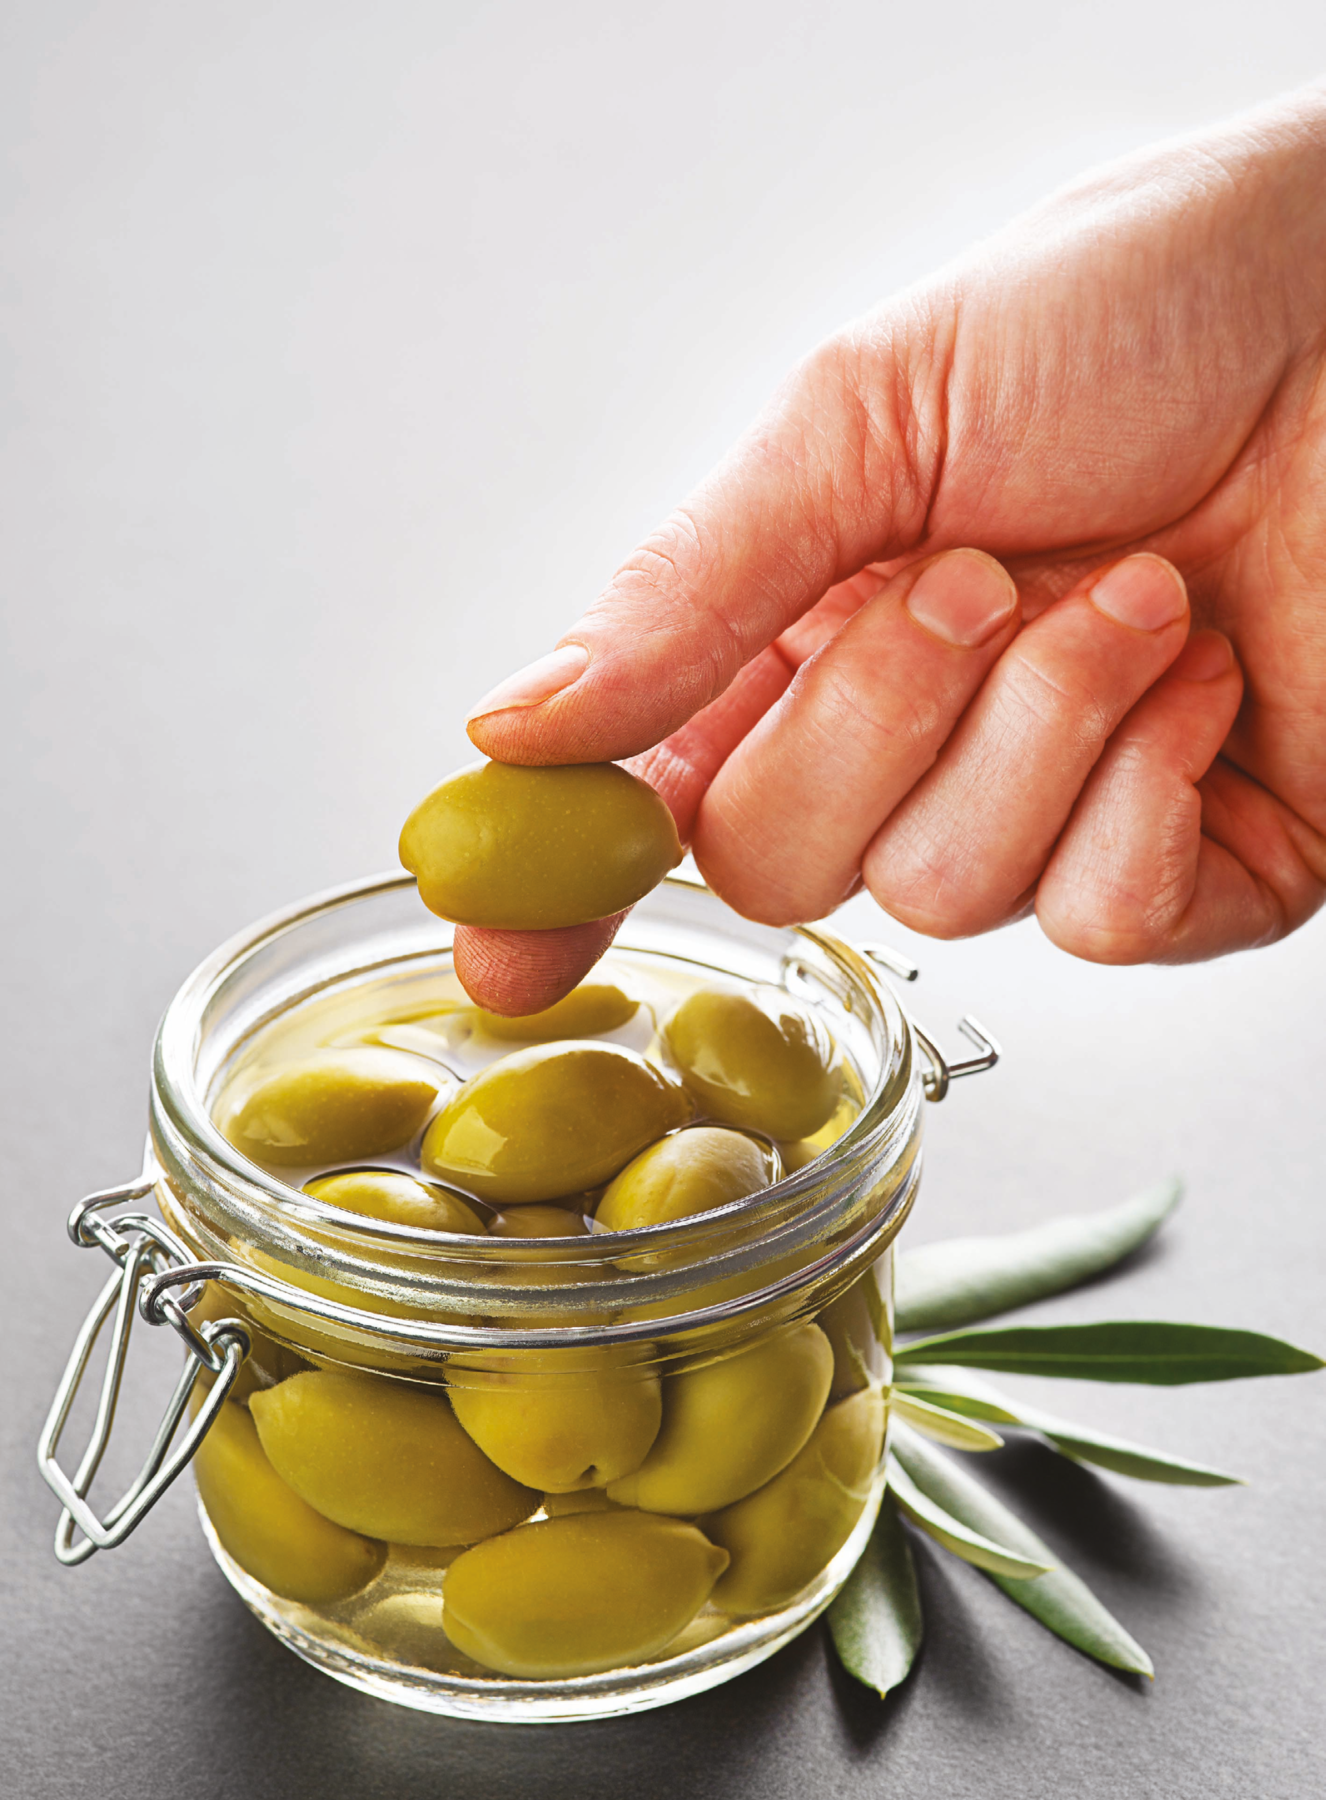 Fotografia. Destaque para a mão de uma pessoa segurando uma azeitona verde. Embaixo, pote de vidro com mais azeitonas em um líquido. Embaixo do pote há algumas folhas de oliveira.